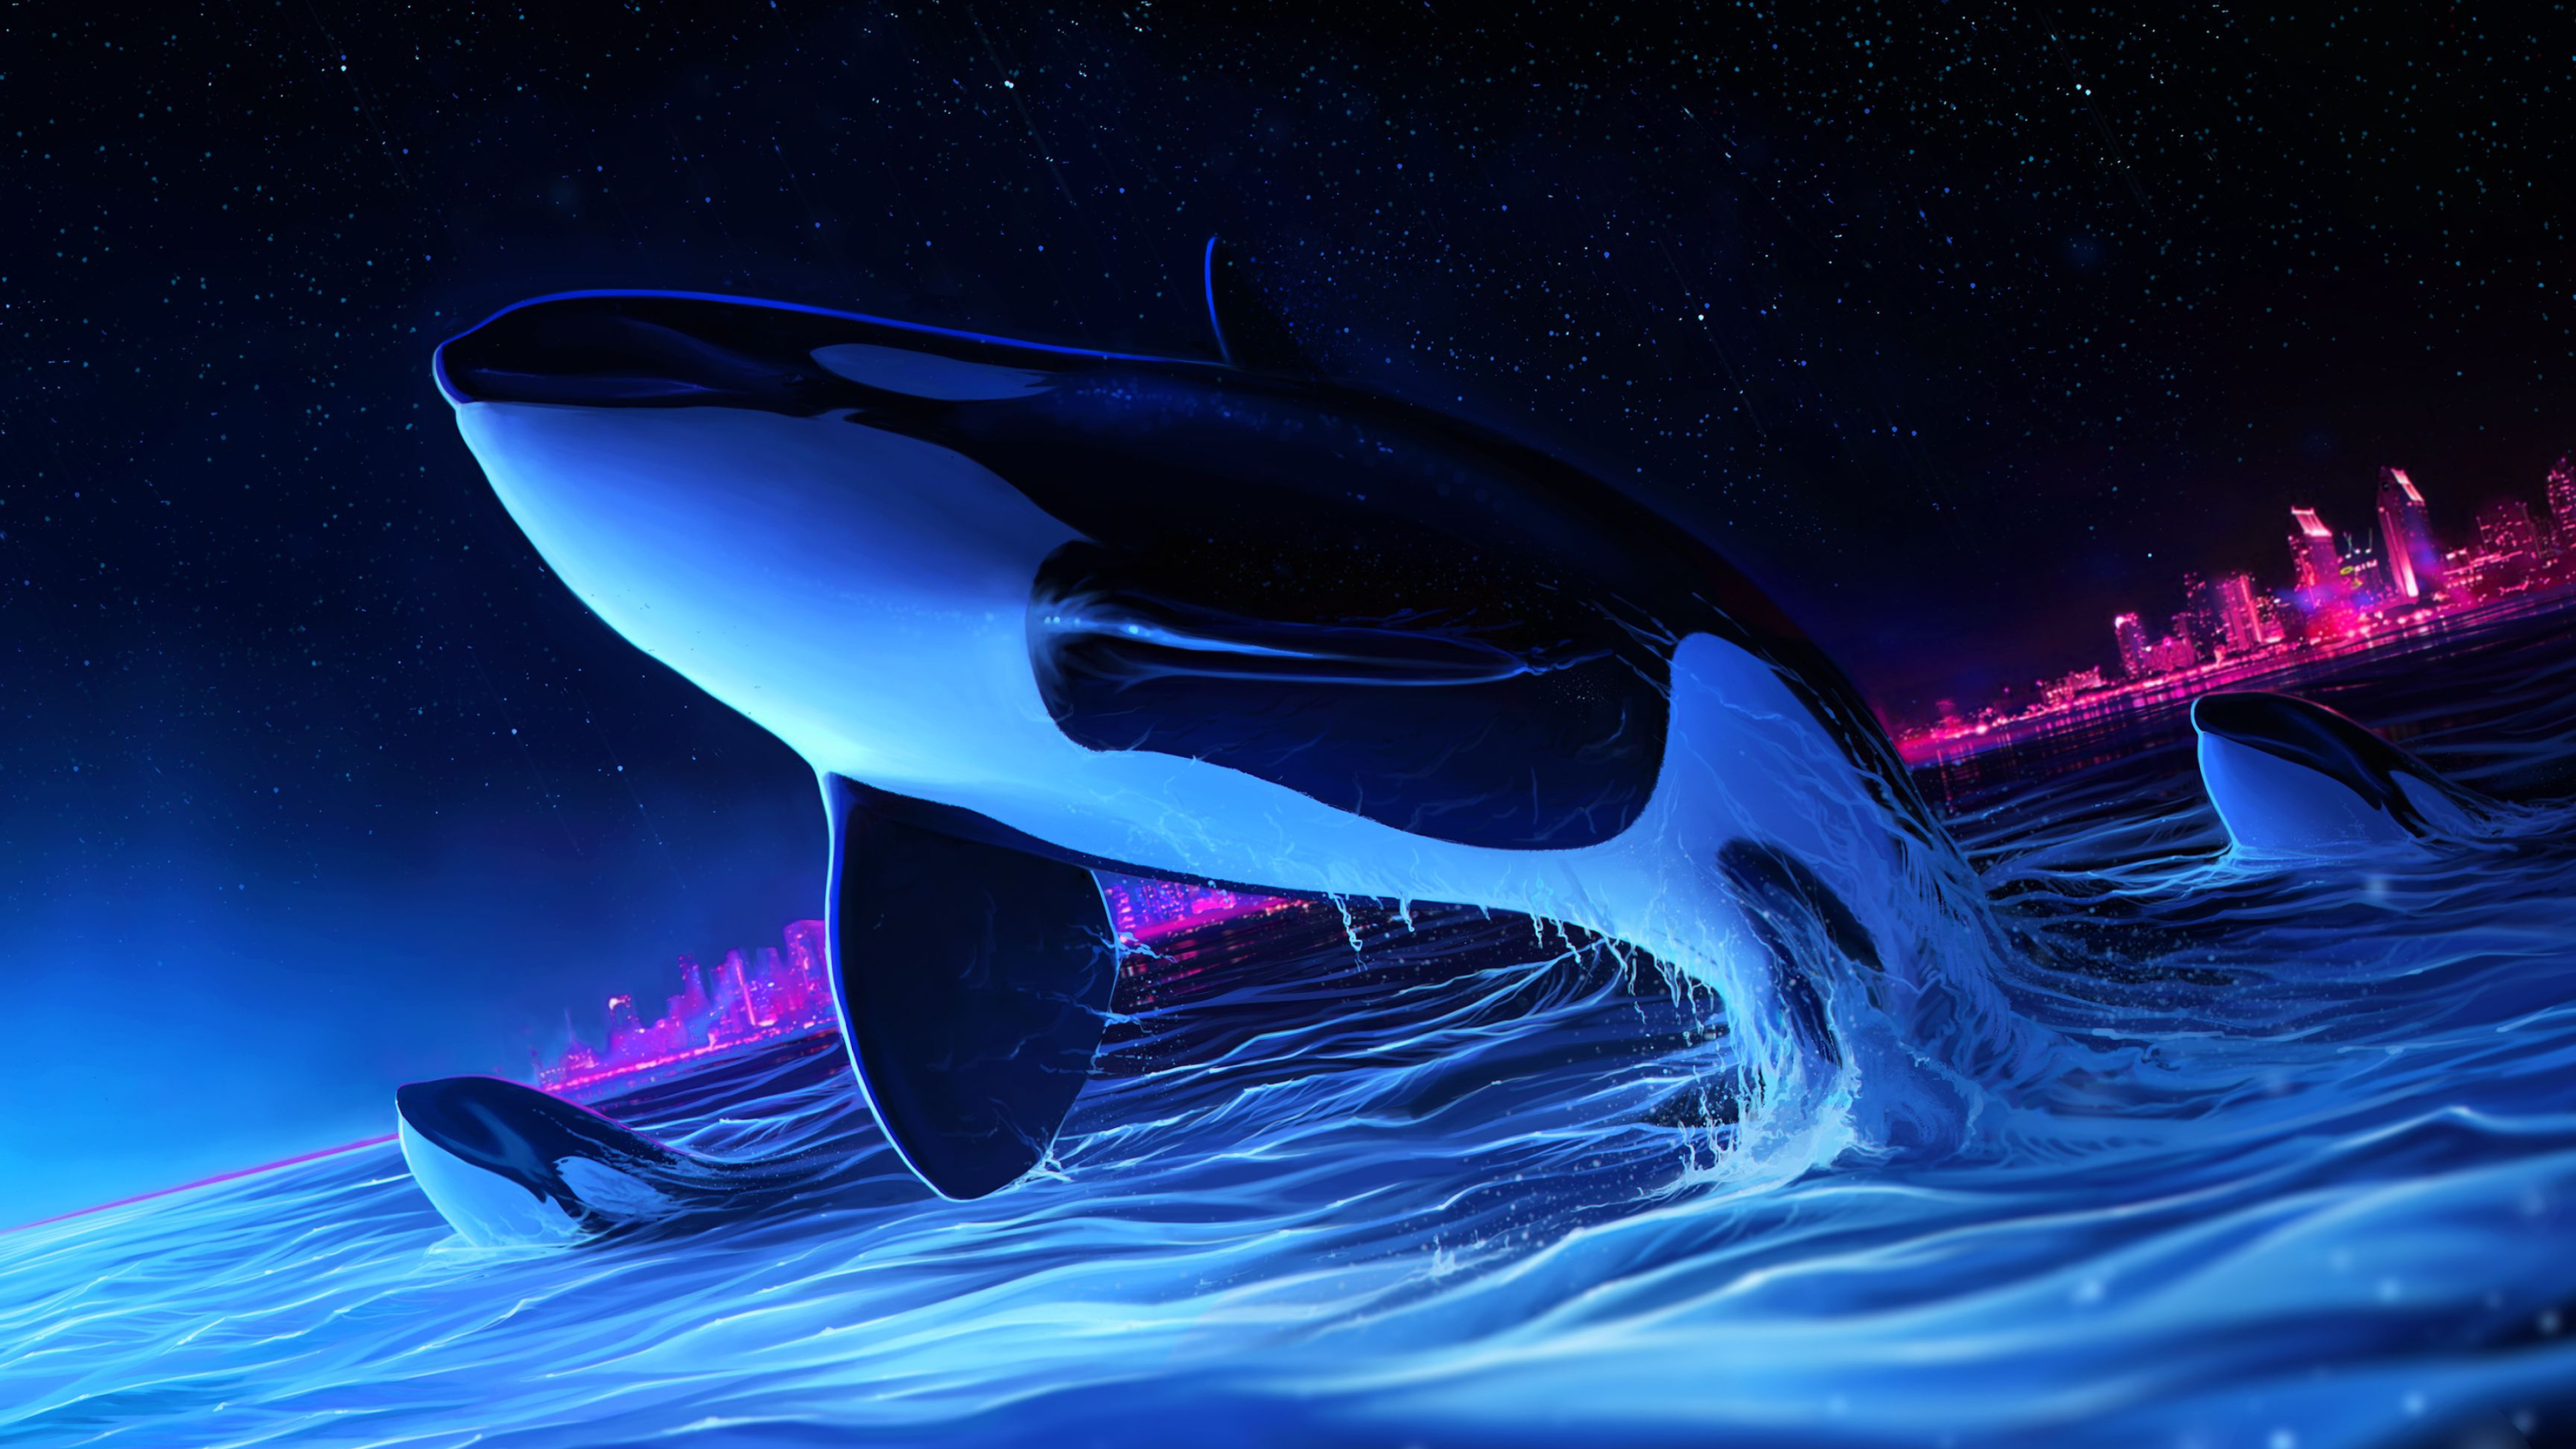 3840x2160 Dolphin Night Orca Whale Digital Art 4k whale wallpapers, hd-wallpapers, dolphin wallpapers, digital art wallpapers, deviantart wall&acirc;&#128;&brvbar; | Whale, Orca art, Orca whales